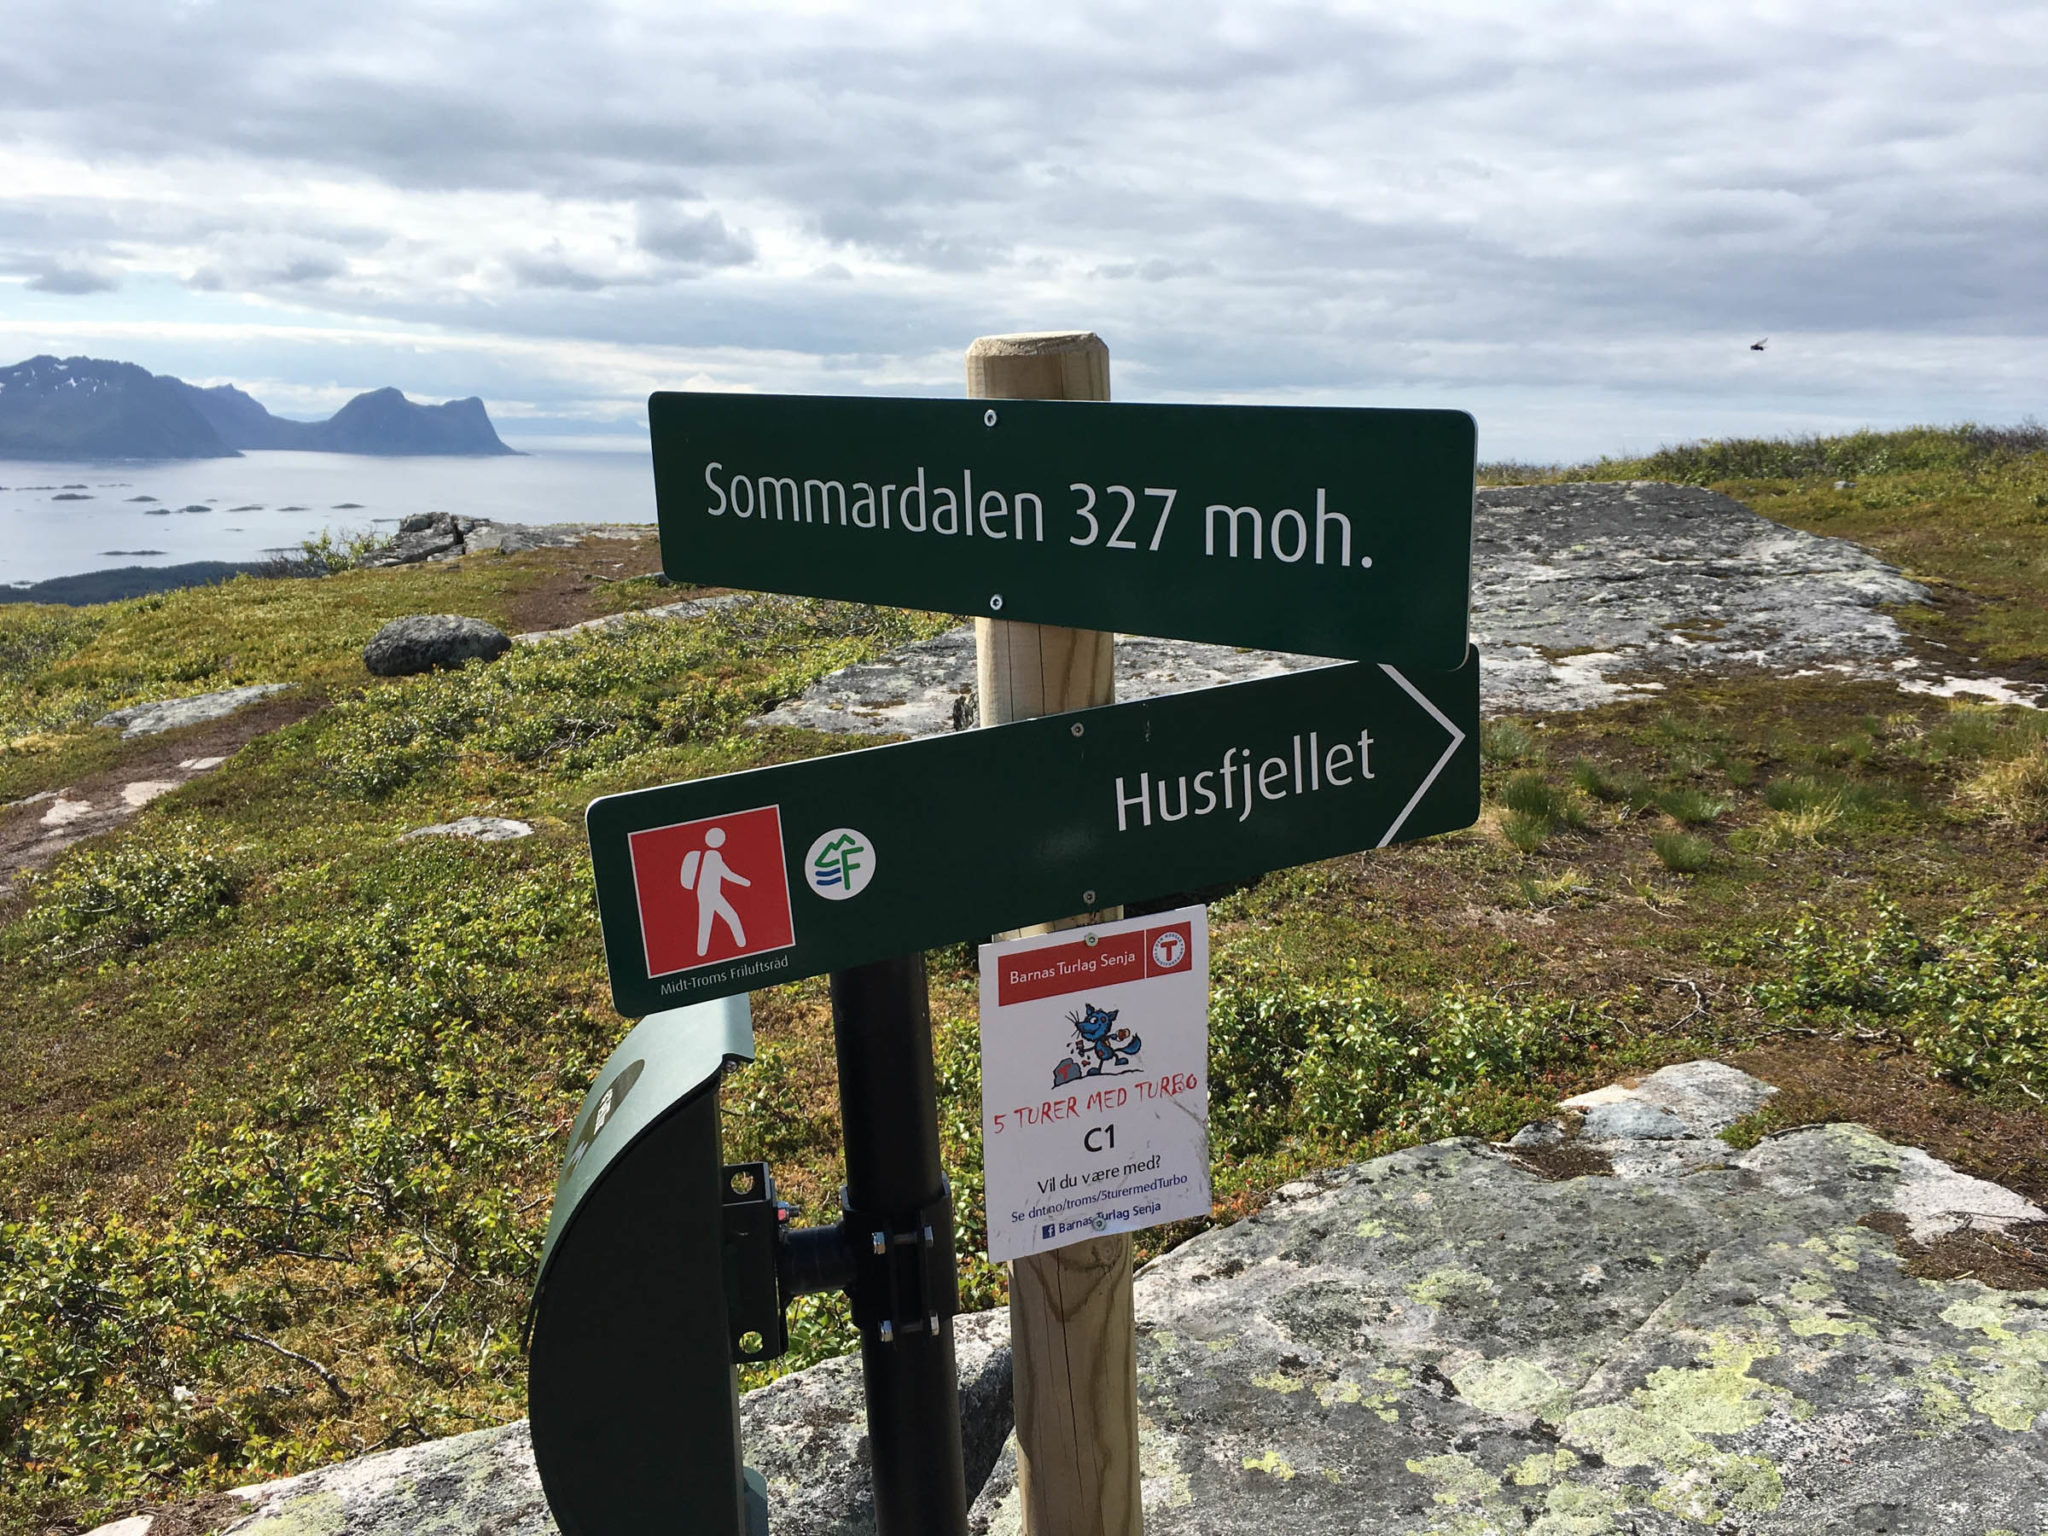 Stien opp mot Husfjellet, Skaland i Senja. Sommardalen er et greit sted å snu for dem som bare vil ha en kort tur 

© Trine Kanter Zerwekh / Statens vegvesen 